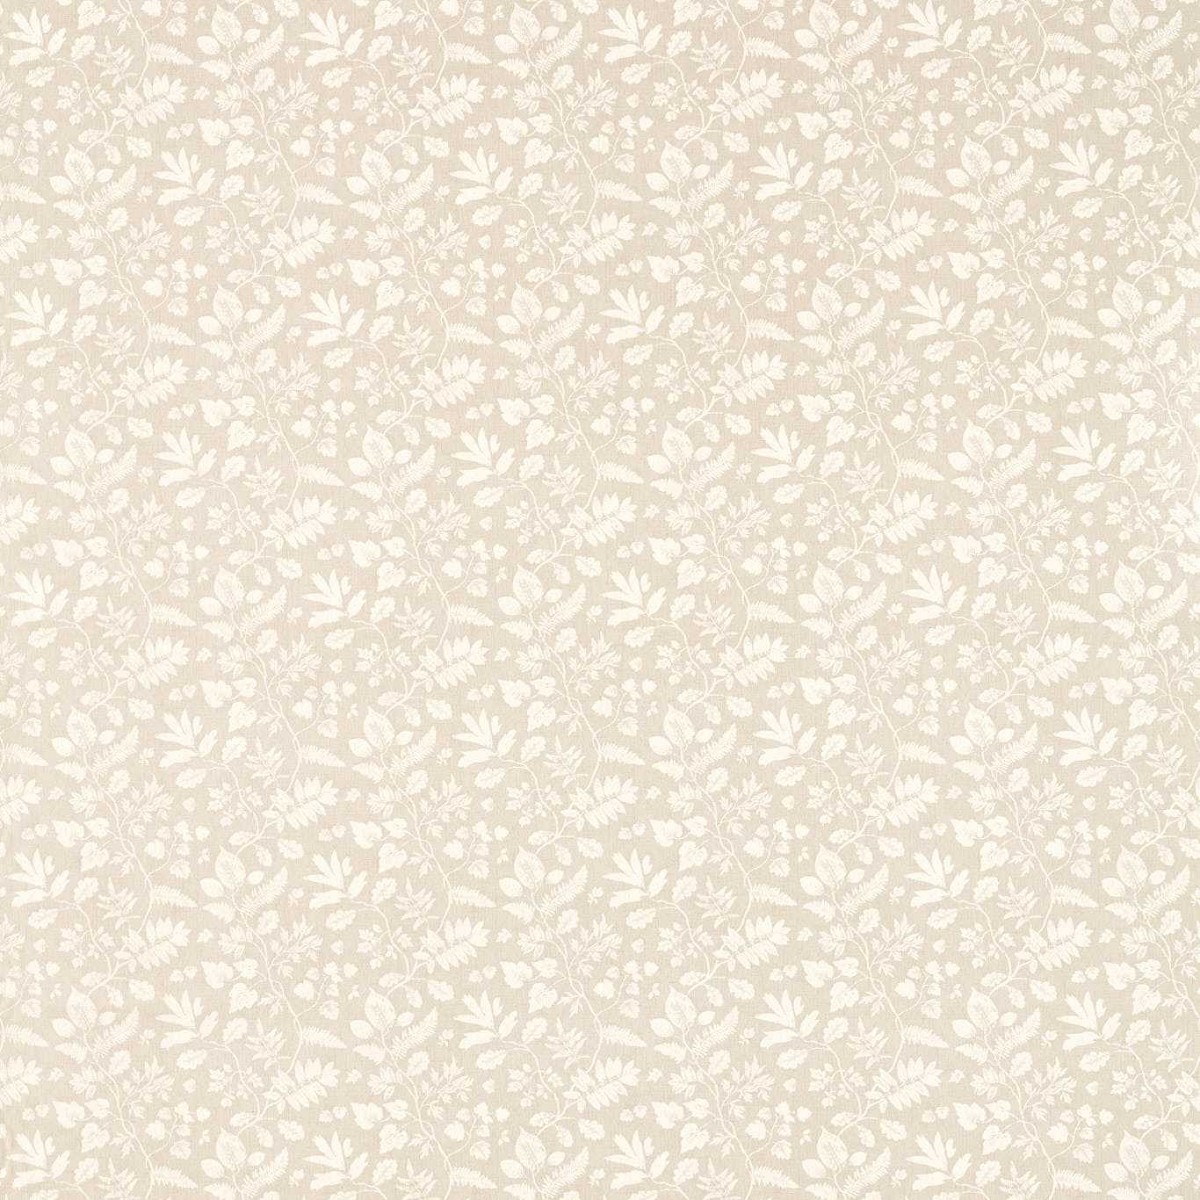 Bellever Linen Fabric by Studio G